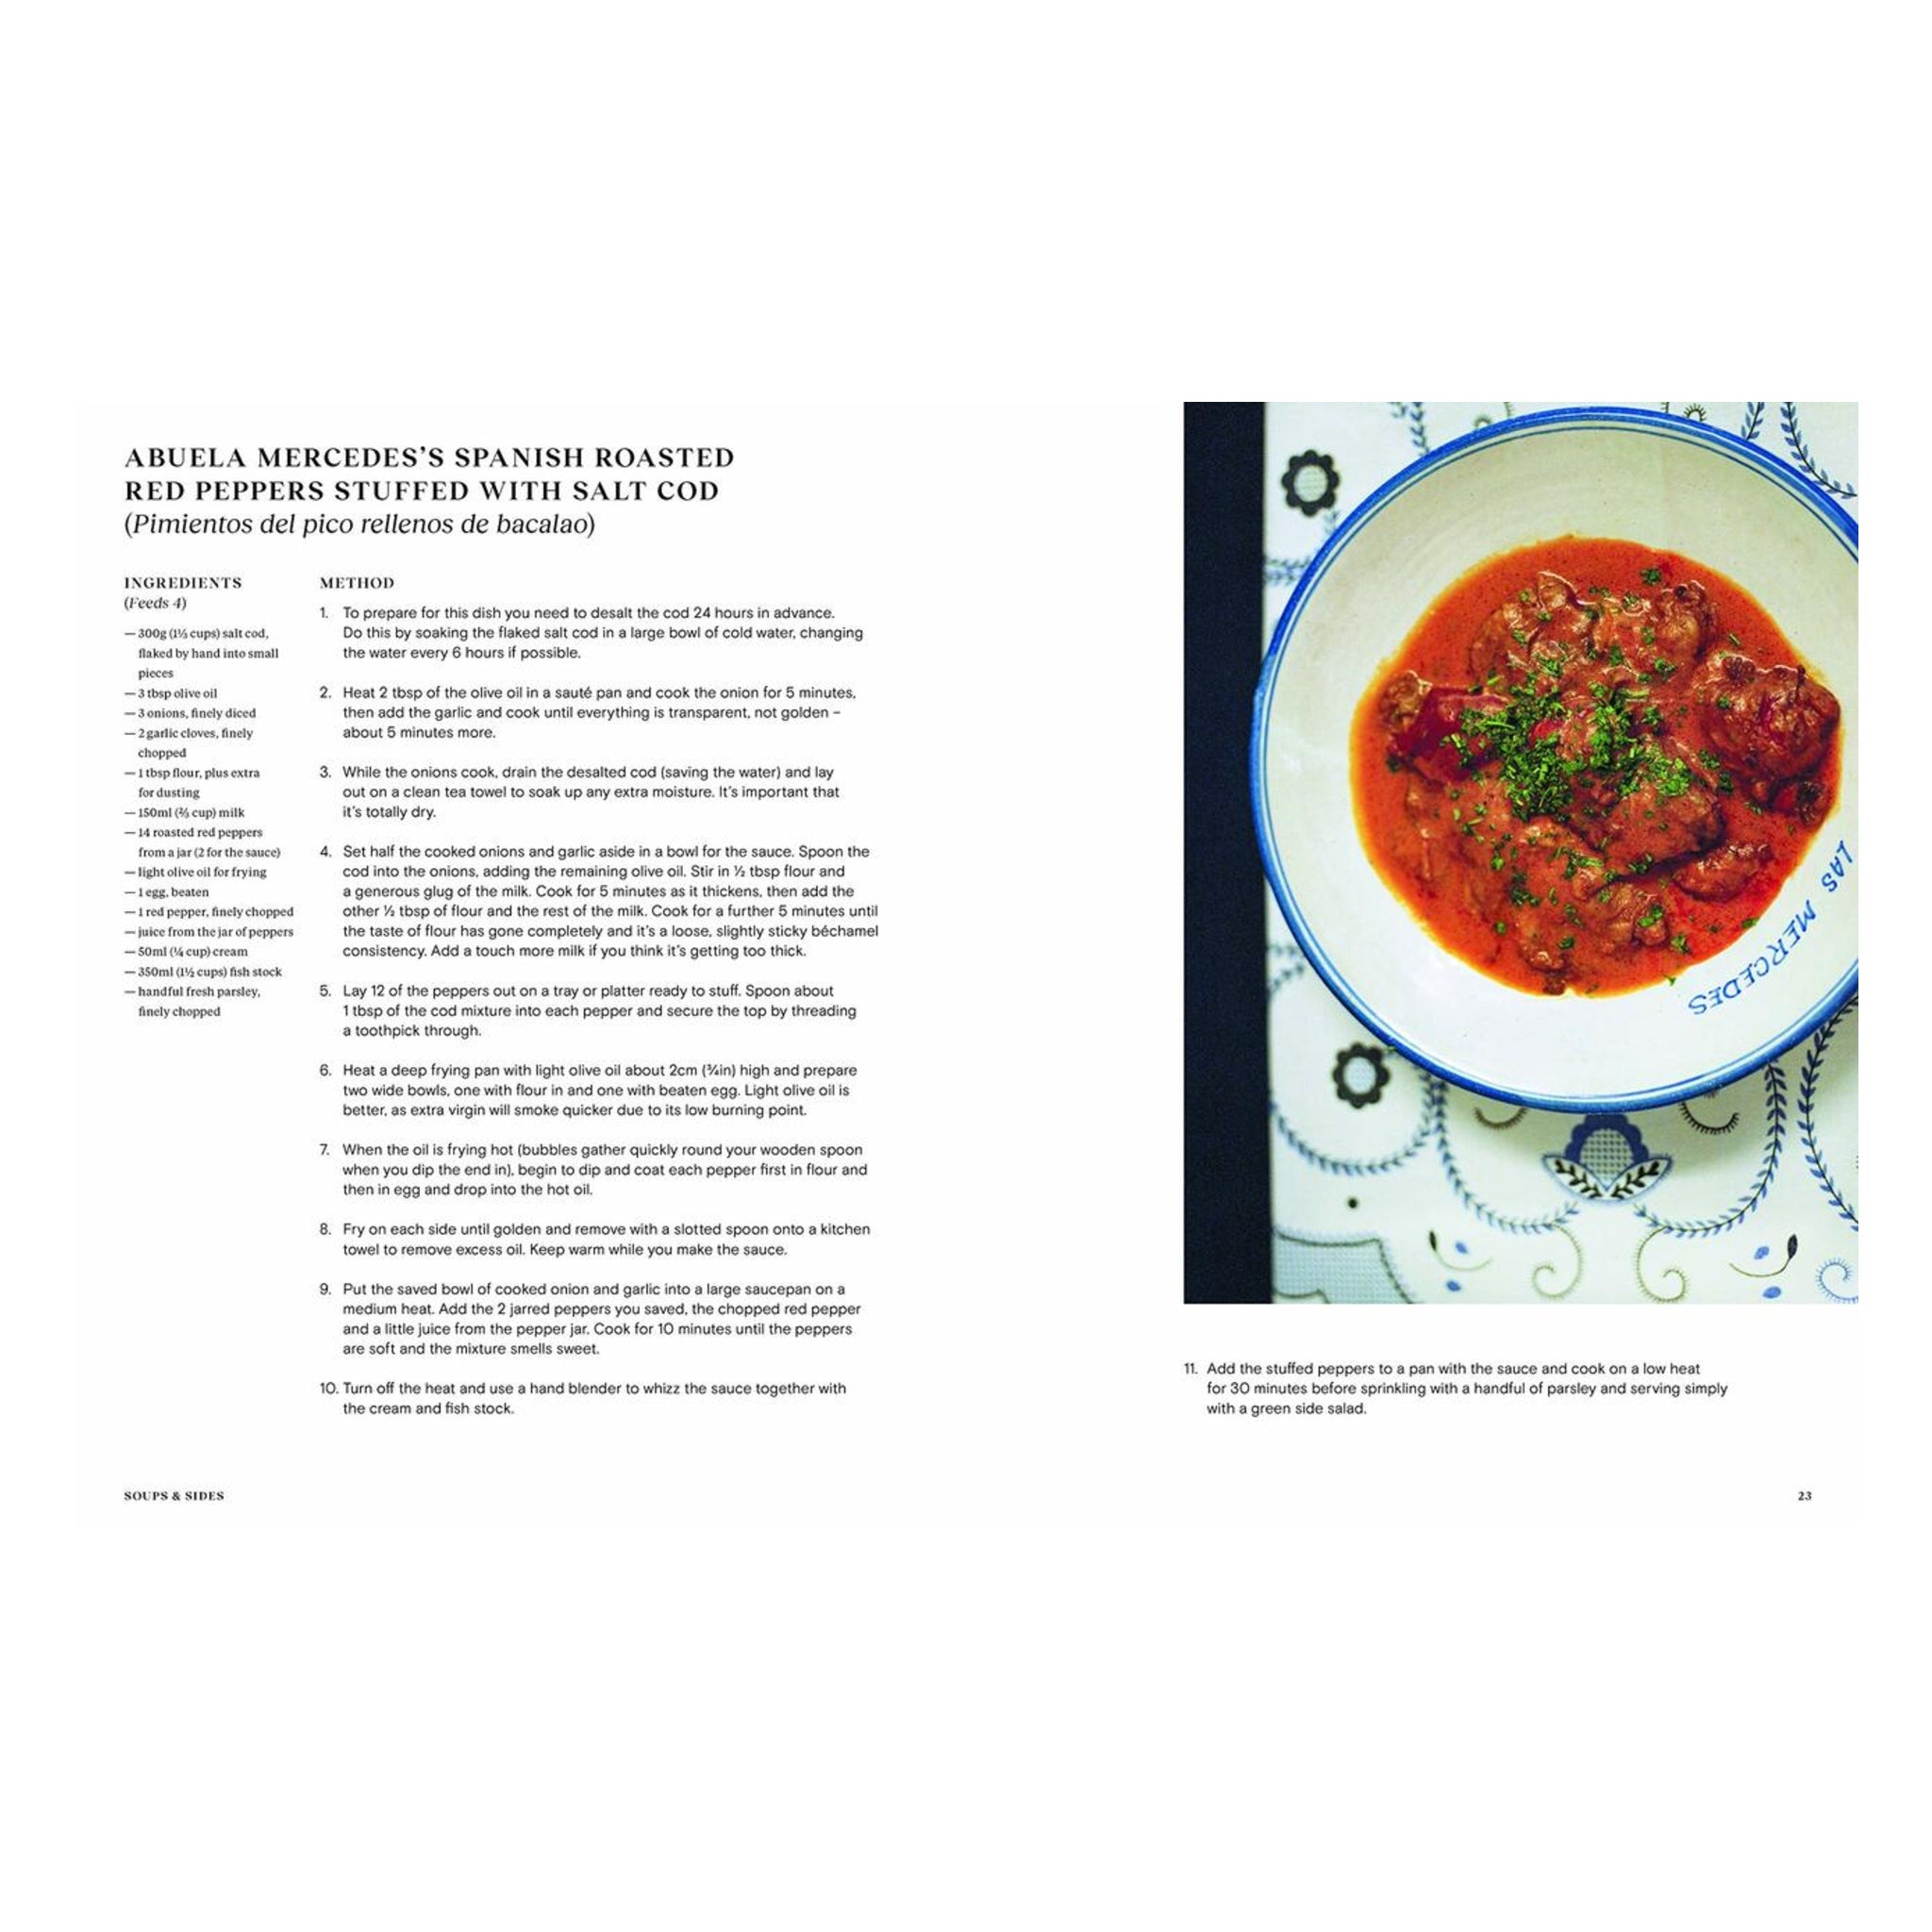 Uddrag af kogebogen Grand Dishes af Lupton & Miari, side 22-23, hos Oliviers & Co